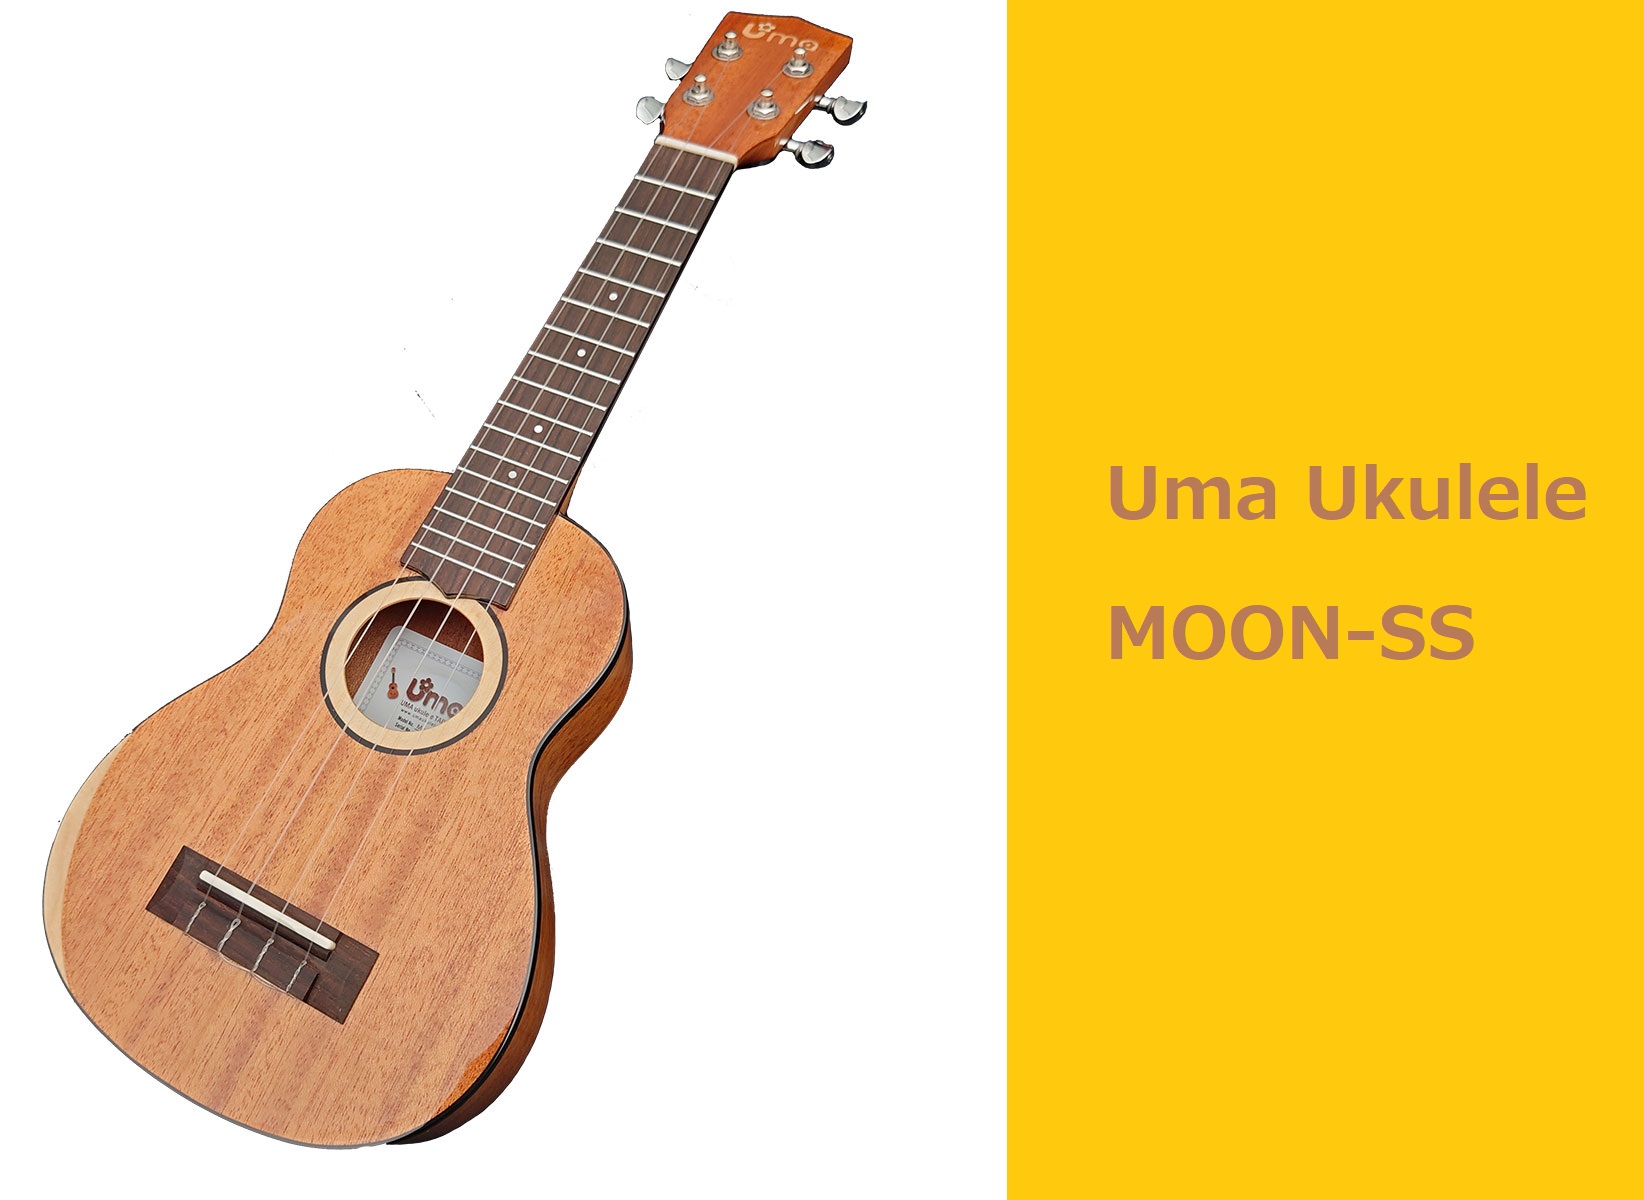 Uma Ukulele のソプラノサイズのウクレレ、『MOON-SS』が大分店で販売中です！ 台湾のウクレレブランド「Uma」のソリッドマホガニーモデル！エルボー部の三日月、サウンドホール部の満月をメイプル材で表現したモデルMOON。マホガニーボディによる甘くて優しいサウンドが特徴です！ 店頭では実 […]